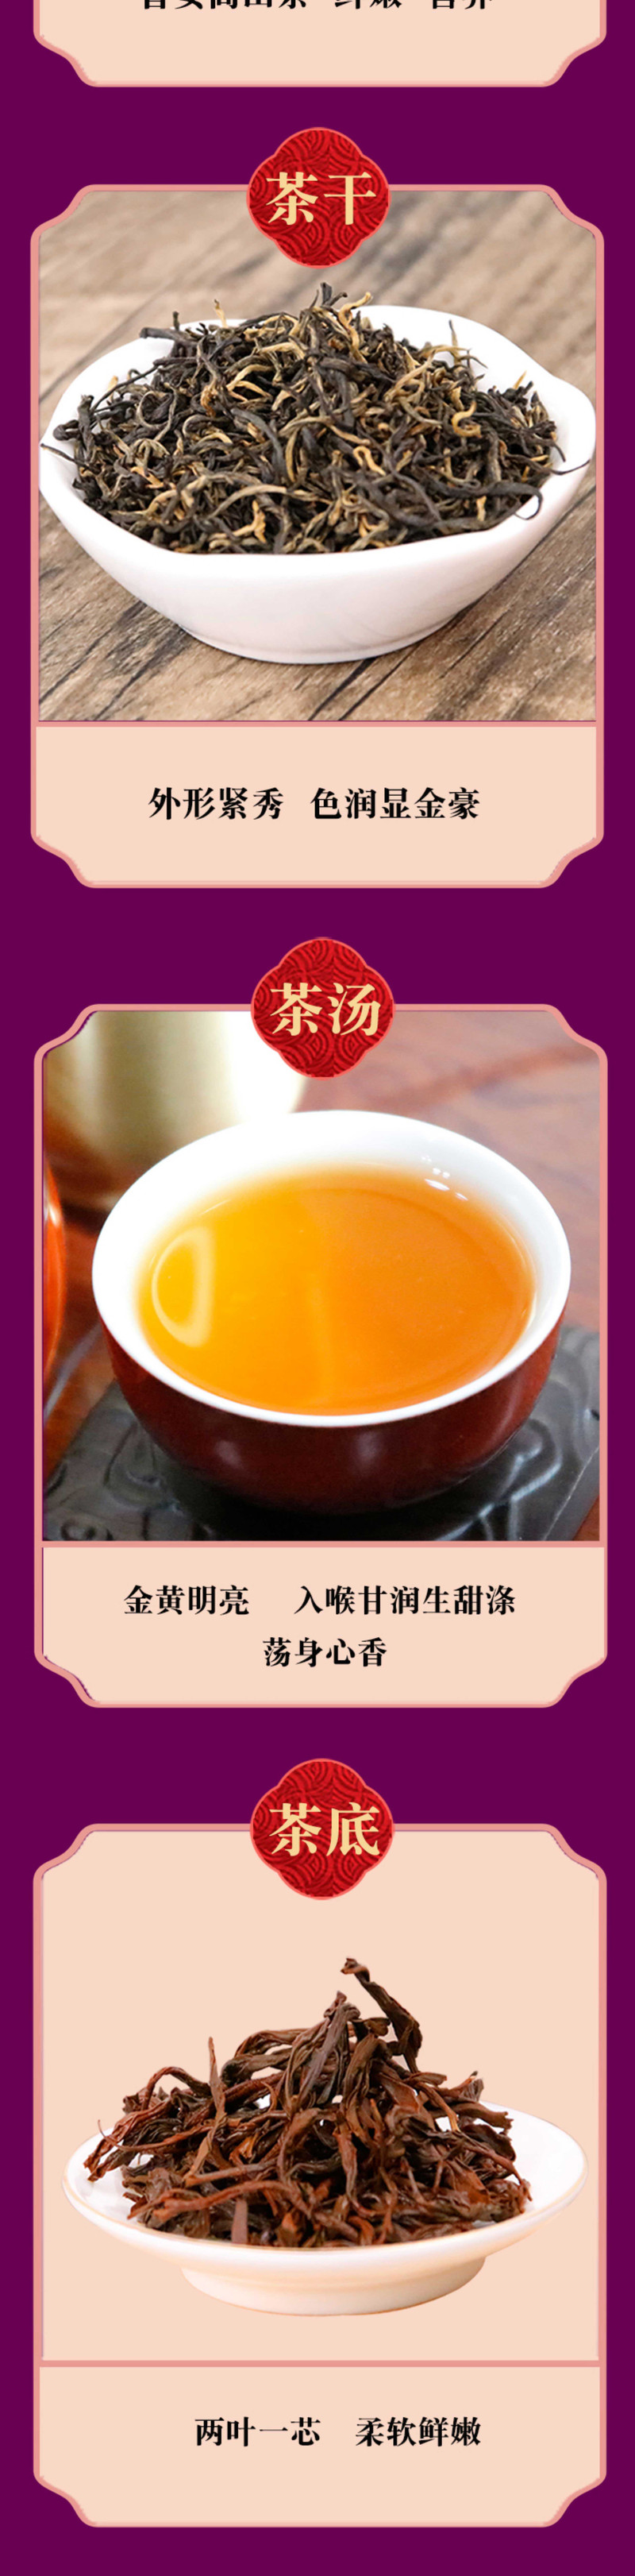 蛮邦贡春 ·兰 普安红茶一级100g 功夫茶